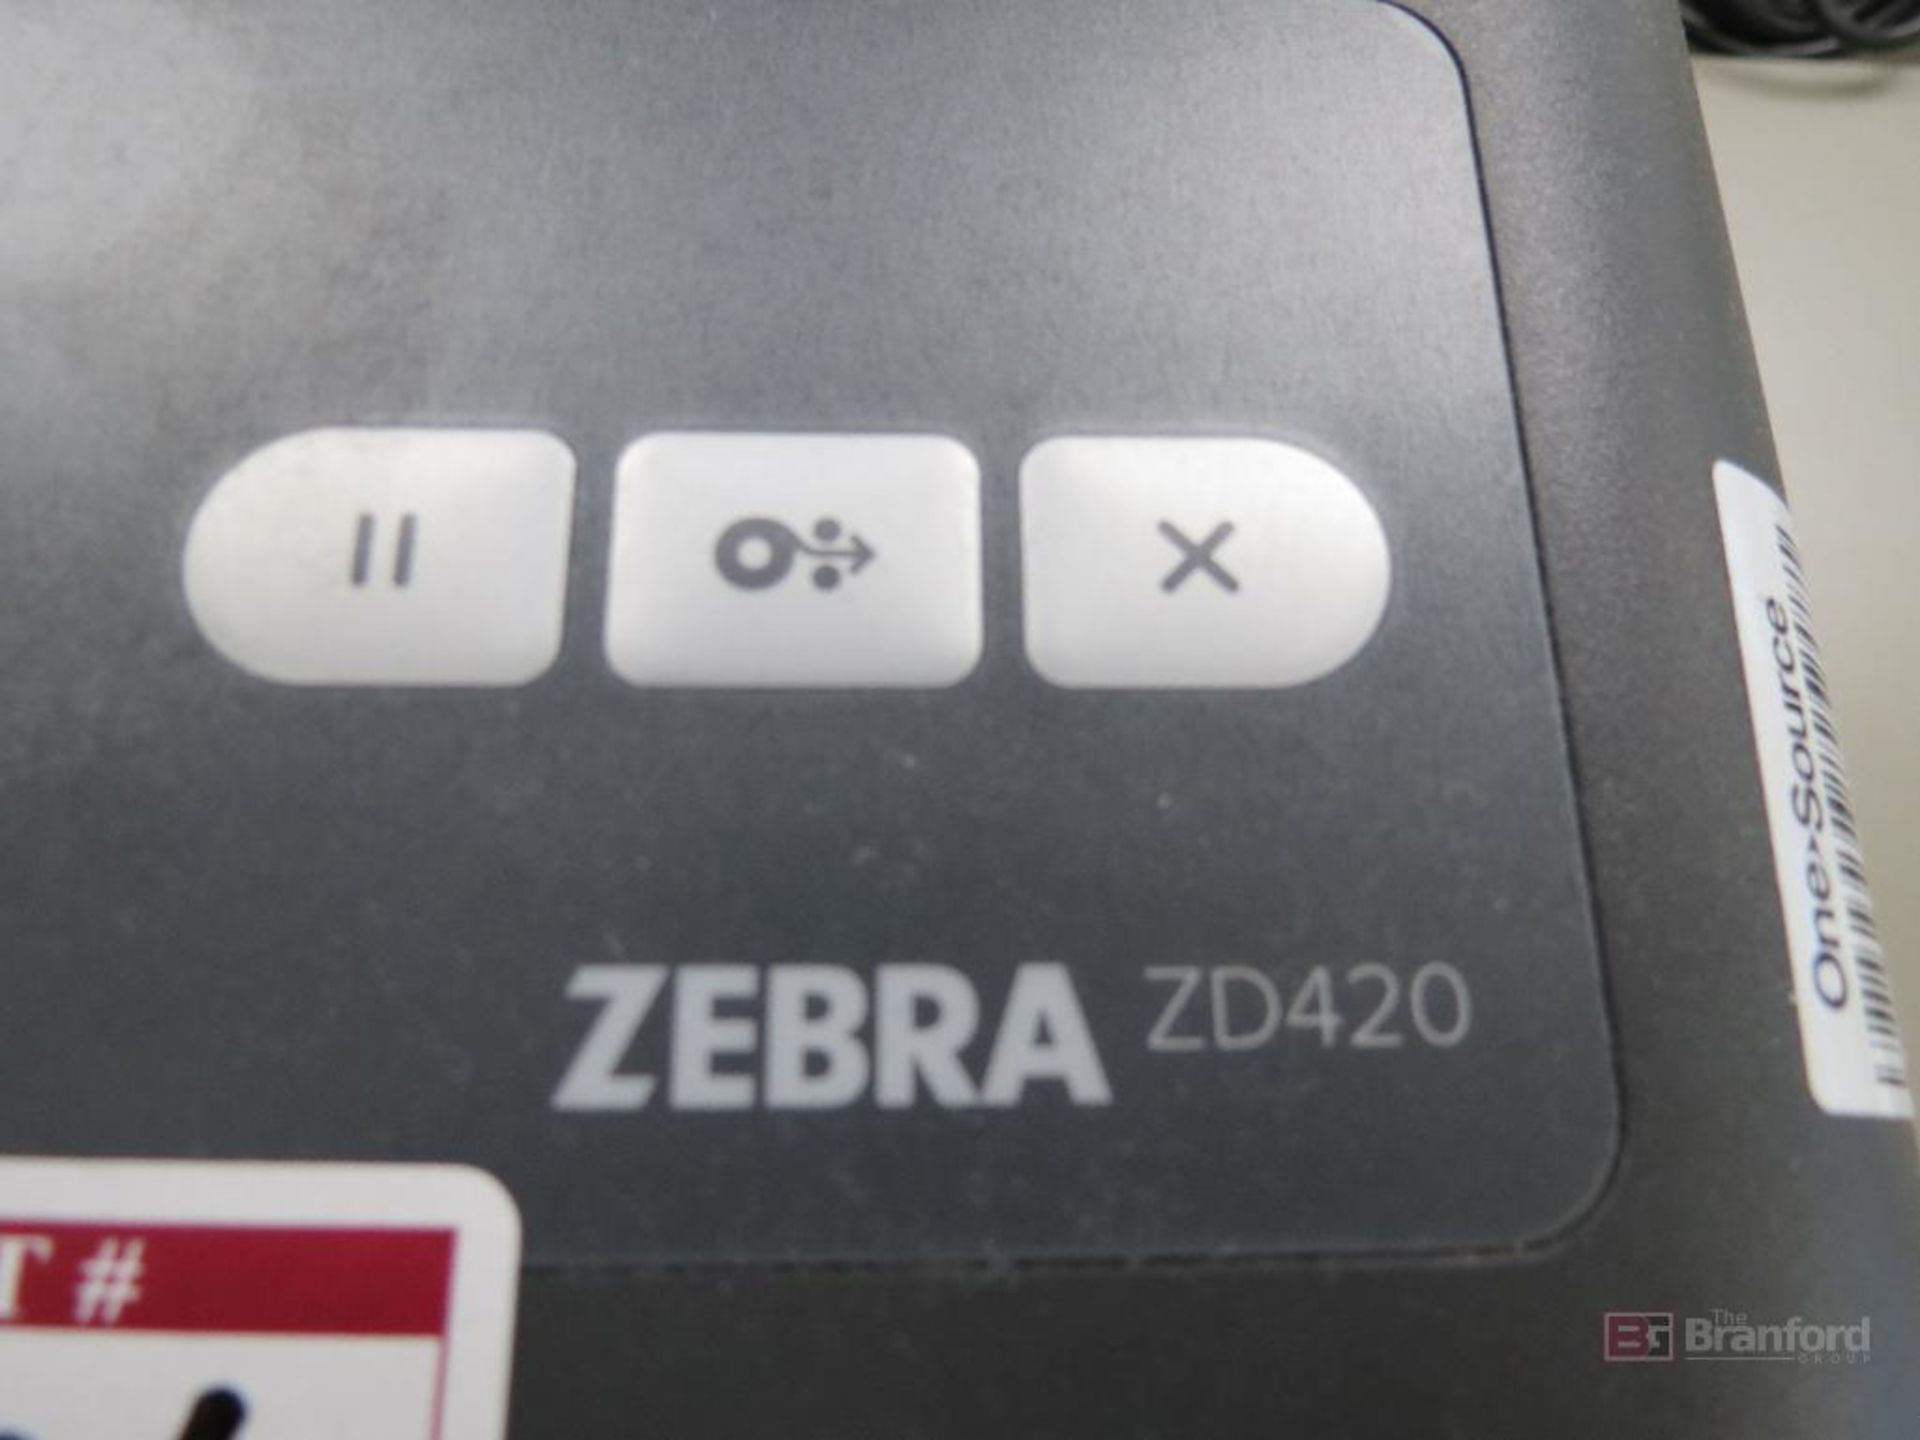 Lot of (2) Brady BBP33 Label Printers, (1) Zebra ZD420 Label Printer - Image 3 of 9